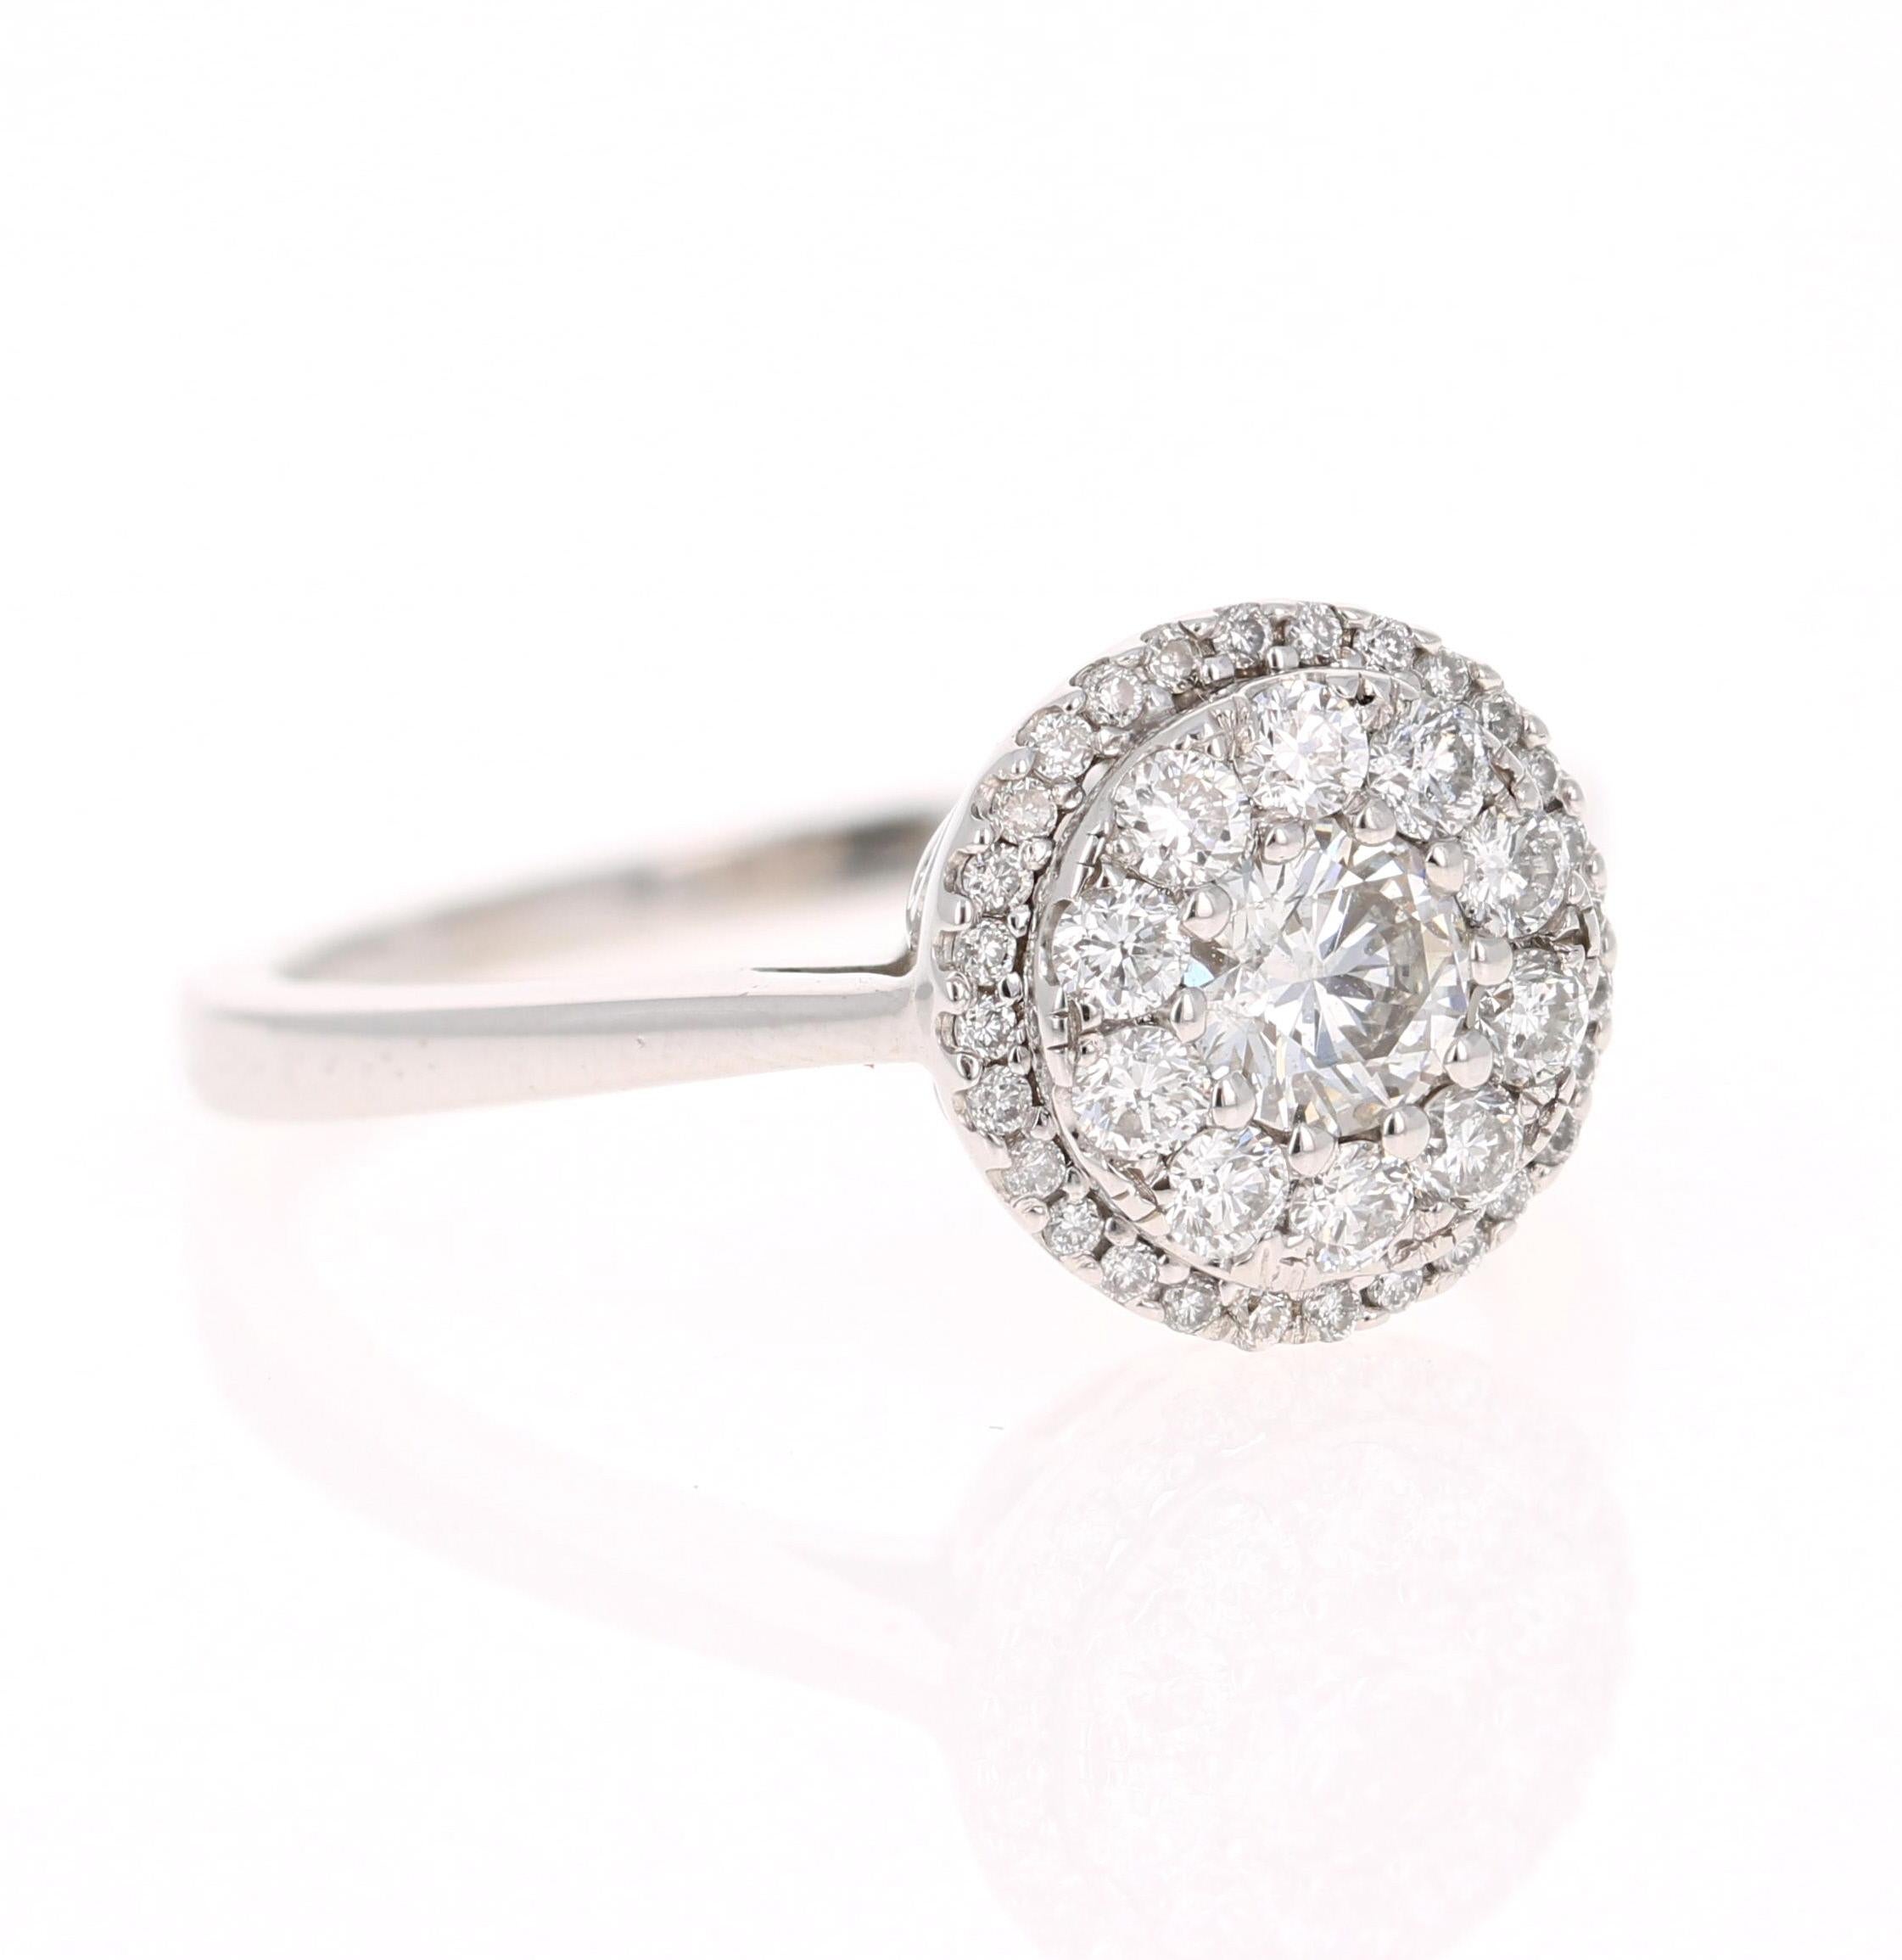 ¡Un precioso anillo de diamante de talla redonda engastado en un engaste redondo invisible que crea un aspecto más grande! 

Este anillo tiene 39 diamantes de talla redonda que pesan 0,73 quilates. (Claridad: VS, Color: F)

Está engastado en oro